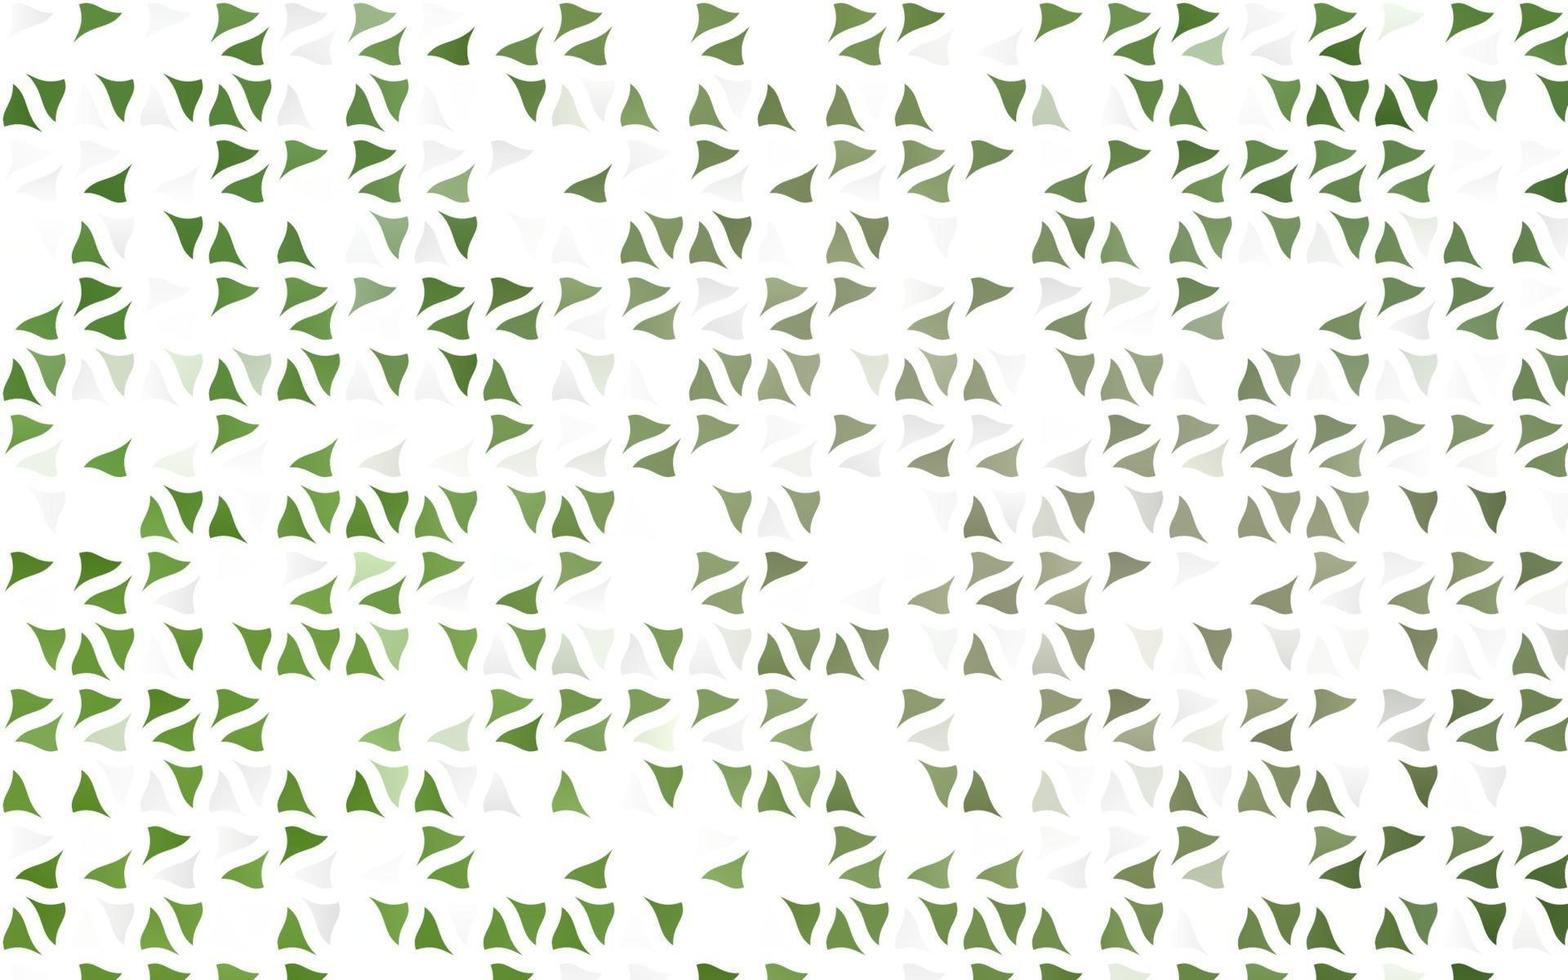 textura de vetor verde claro em estilo triangular.